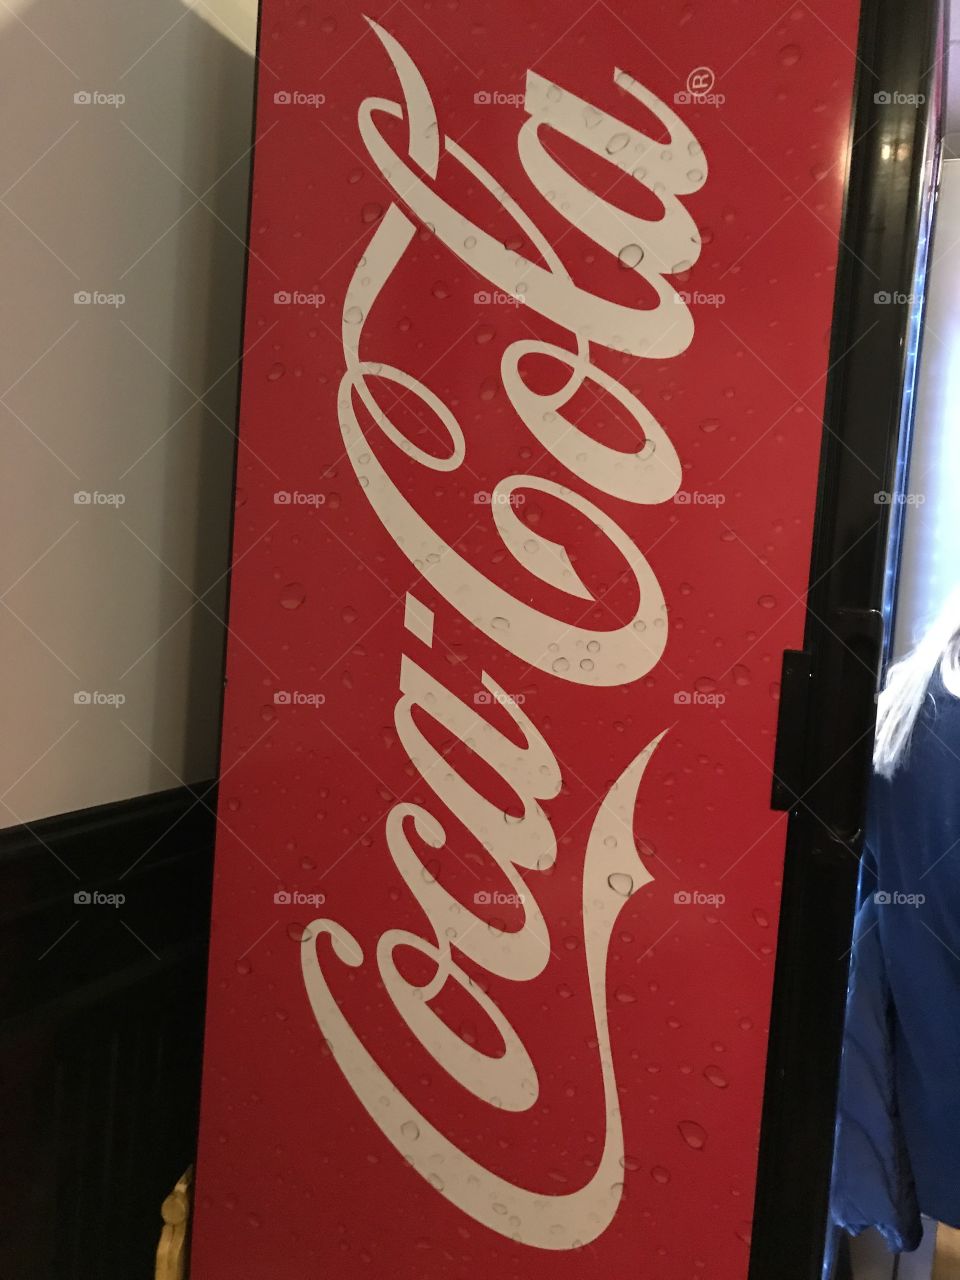 Coke-Cola